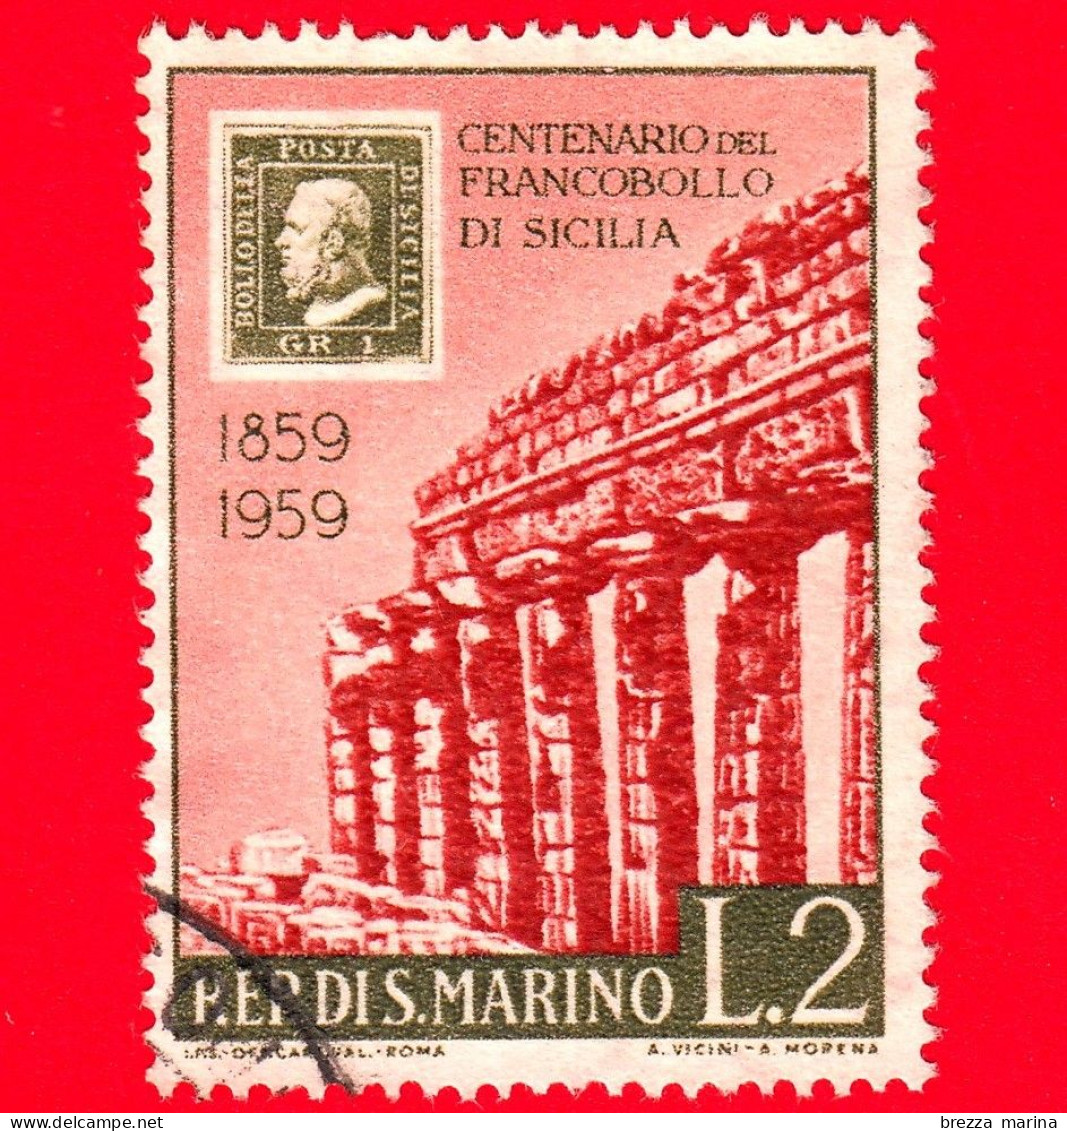 SAN MARINO - Usato - 1959 - Centenario Dei Francobolli Di Sicilia - Tempio Di Selinunte - 2 L. - Usati